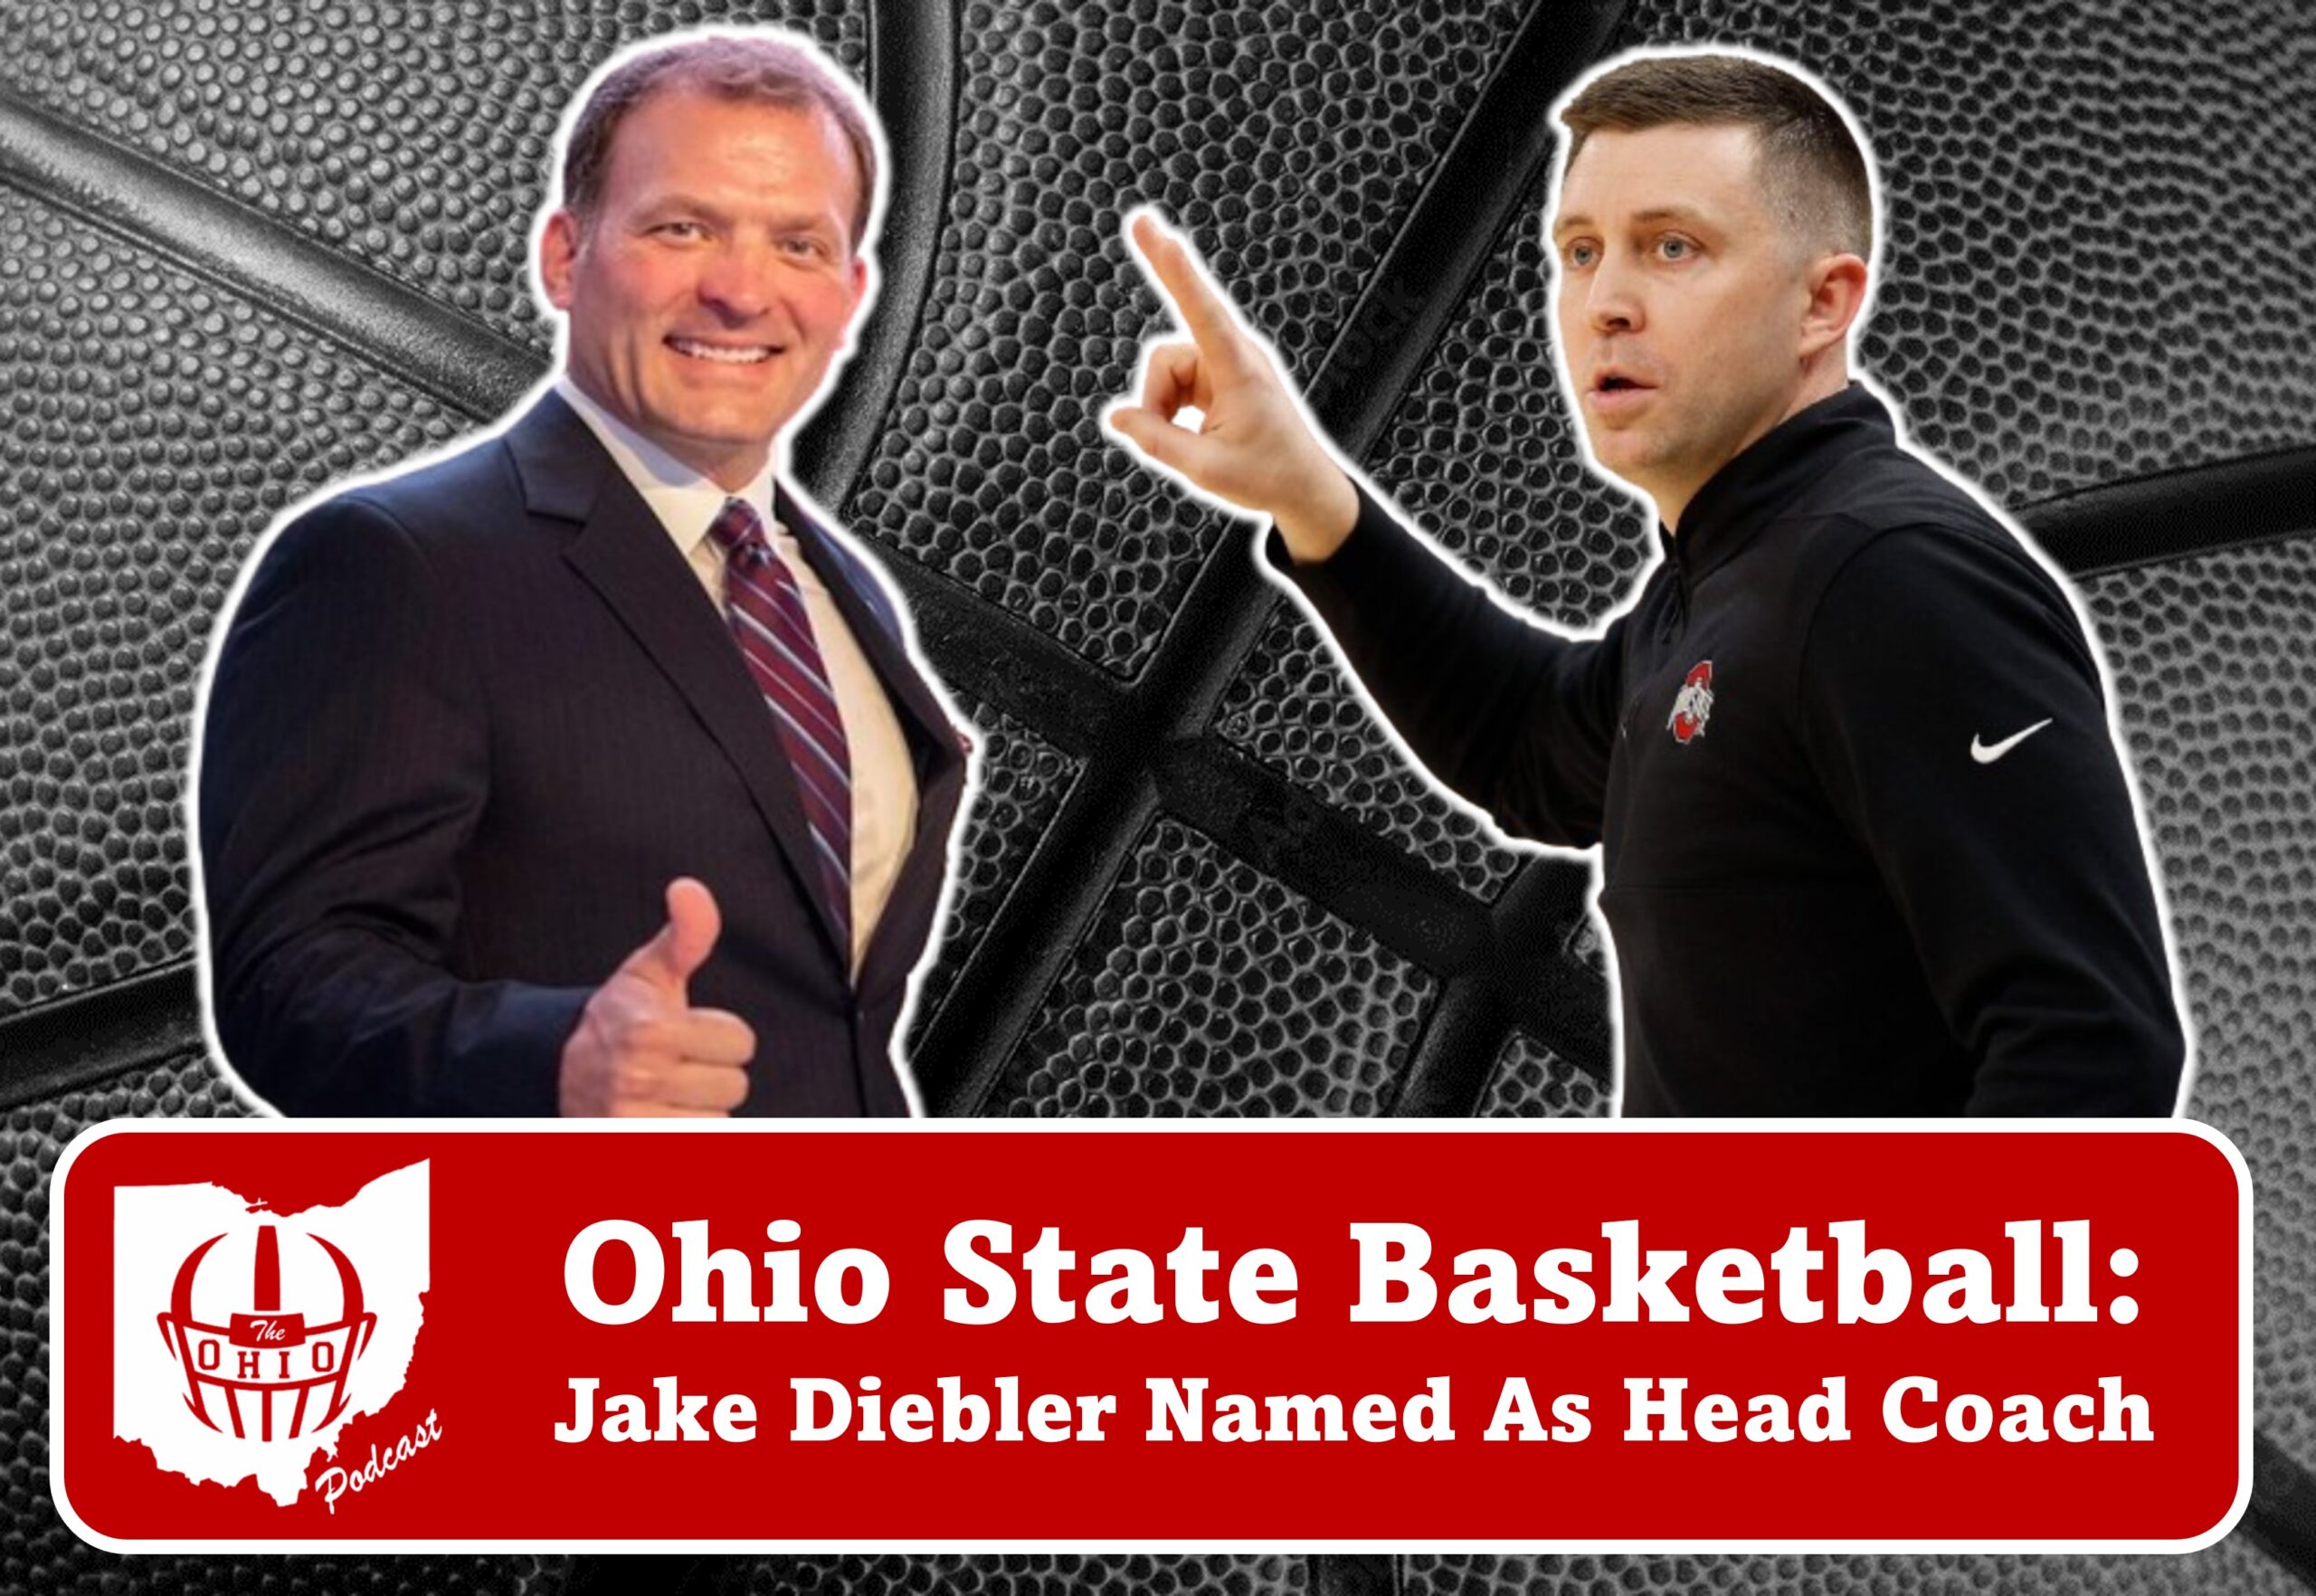 Jake Diebler Named As Head Coach